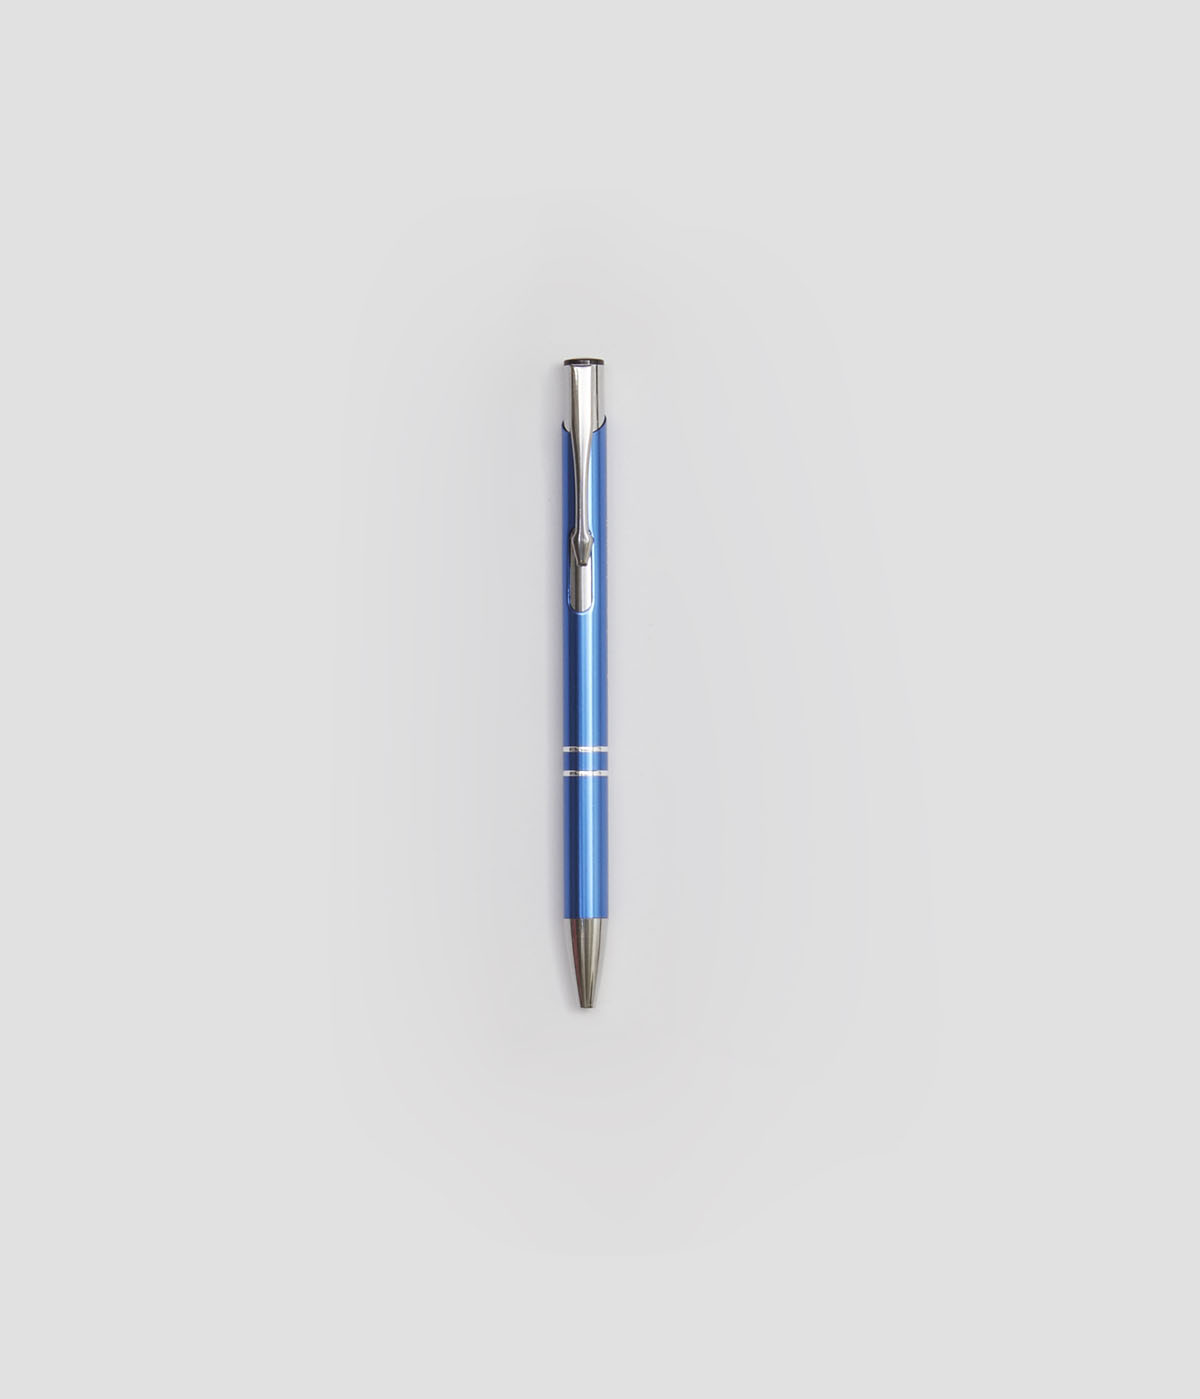 Chrome ballpoint pen